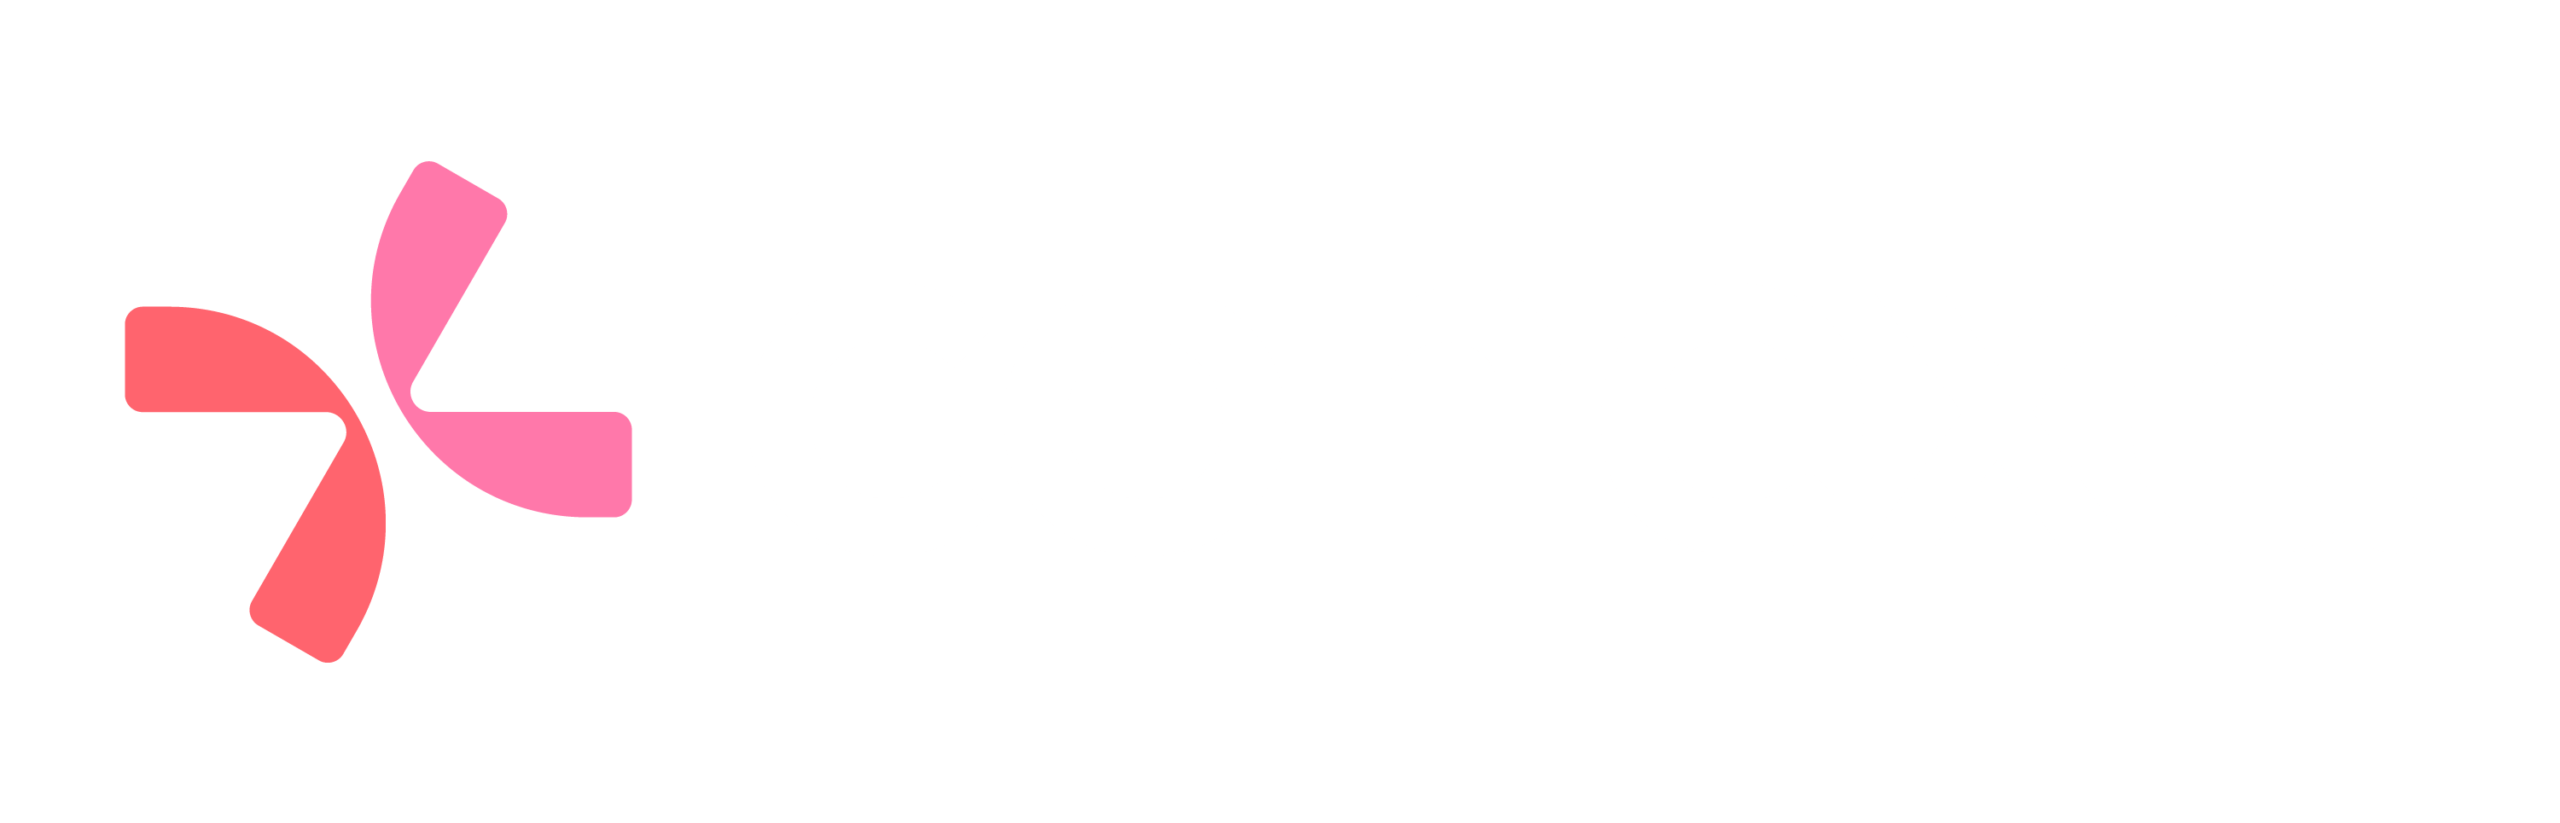 [Logo] Conexa (Cor e Branca)